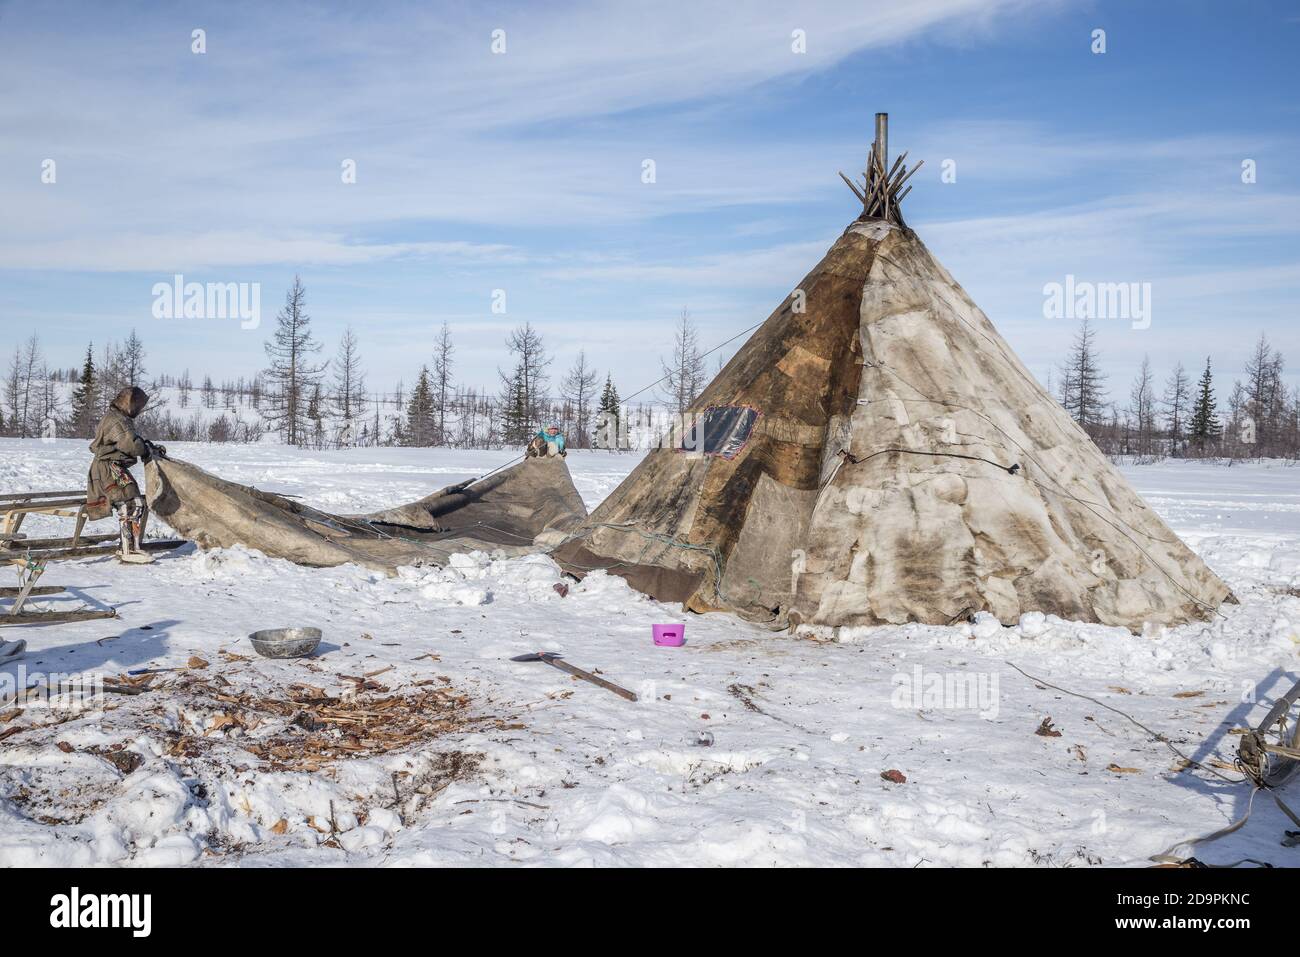 Una famiglia Nenets smantellare una tenda tradizionale per la migrazione, Yamalo-Nenets Autonomous Okrug, Russia Foto Stock